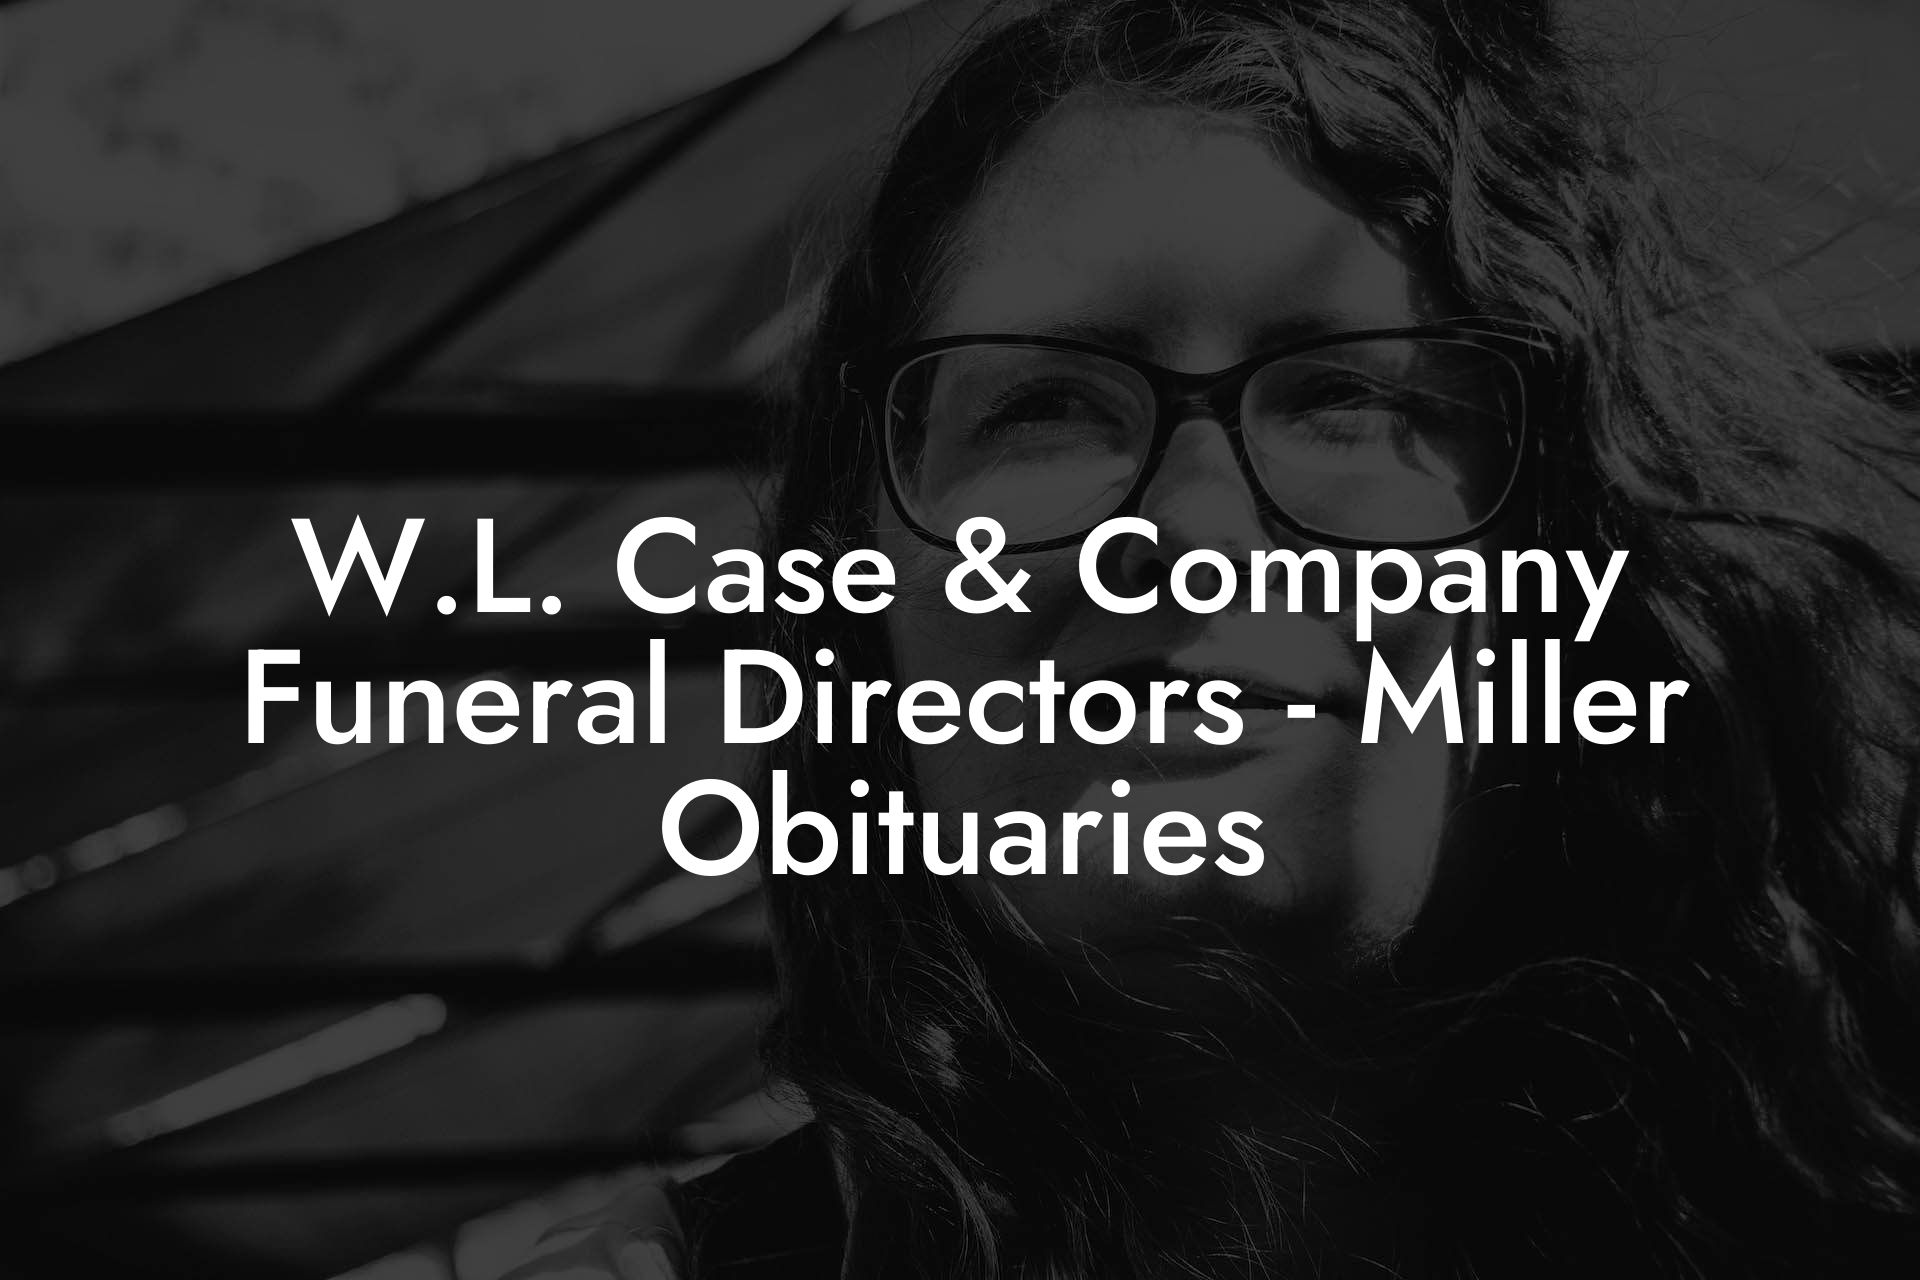 W.L. Case & Company Funeral Directors - Miller Obituaries